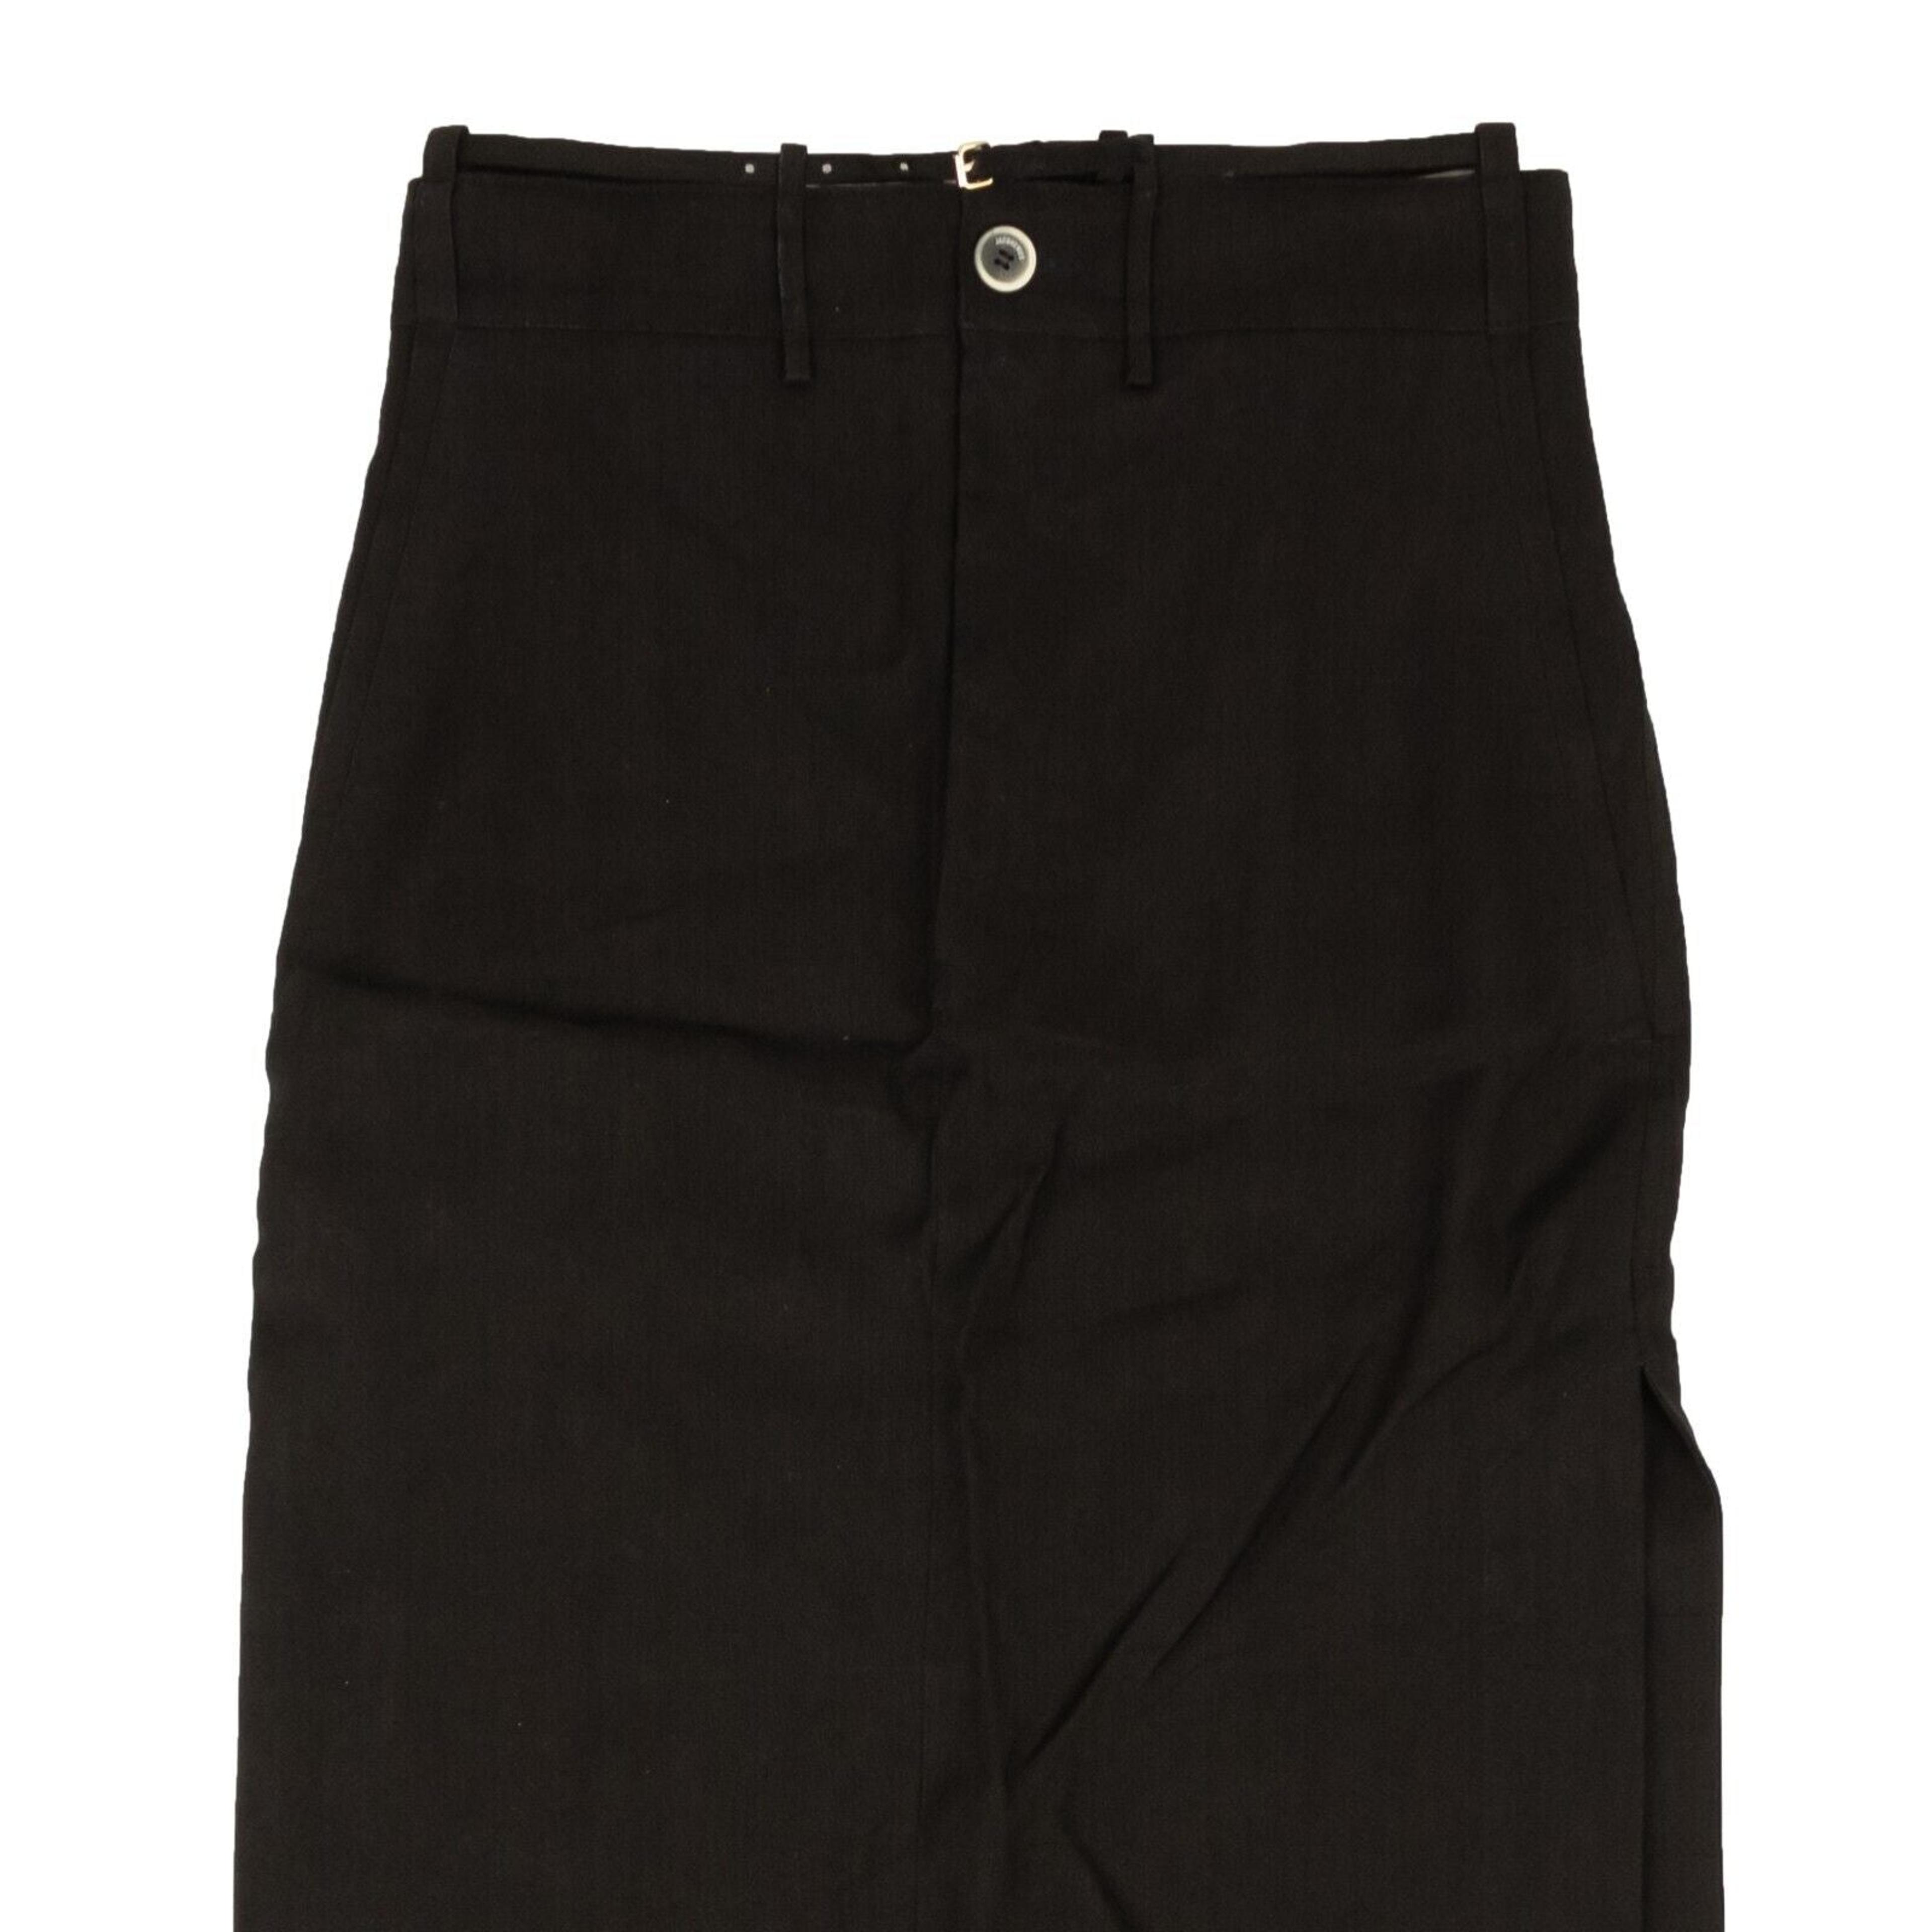 Alternate View 1 of Black La Jupe Terraio Straight Long Skirt